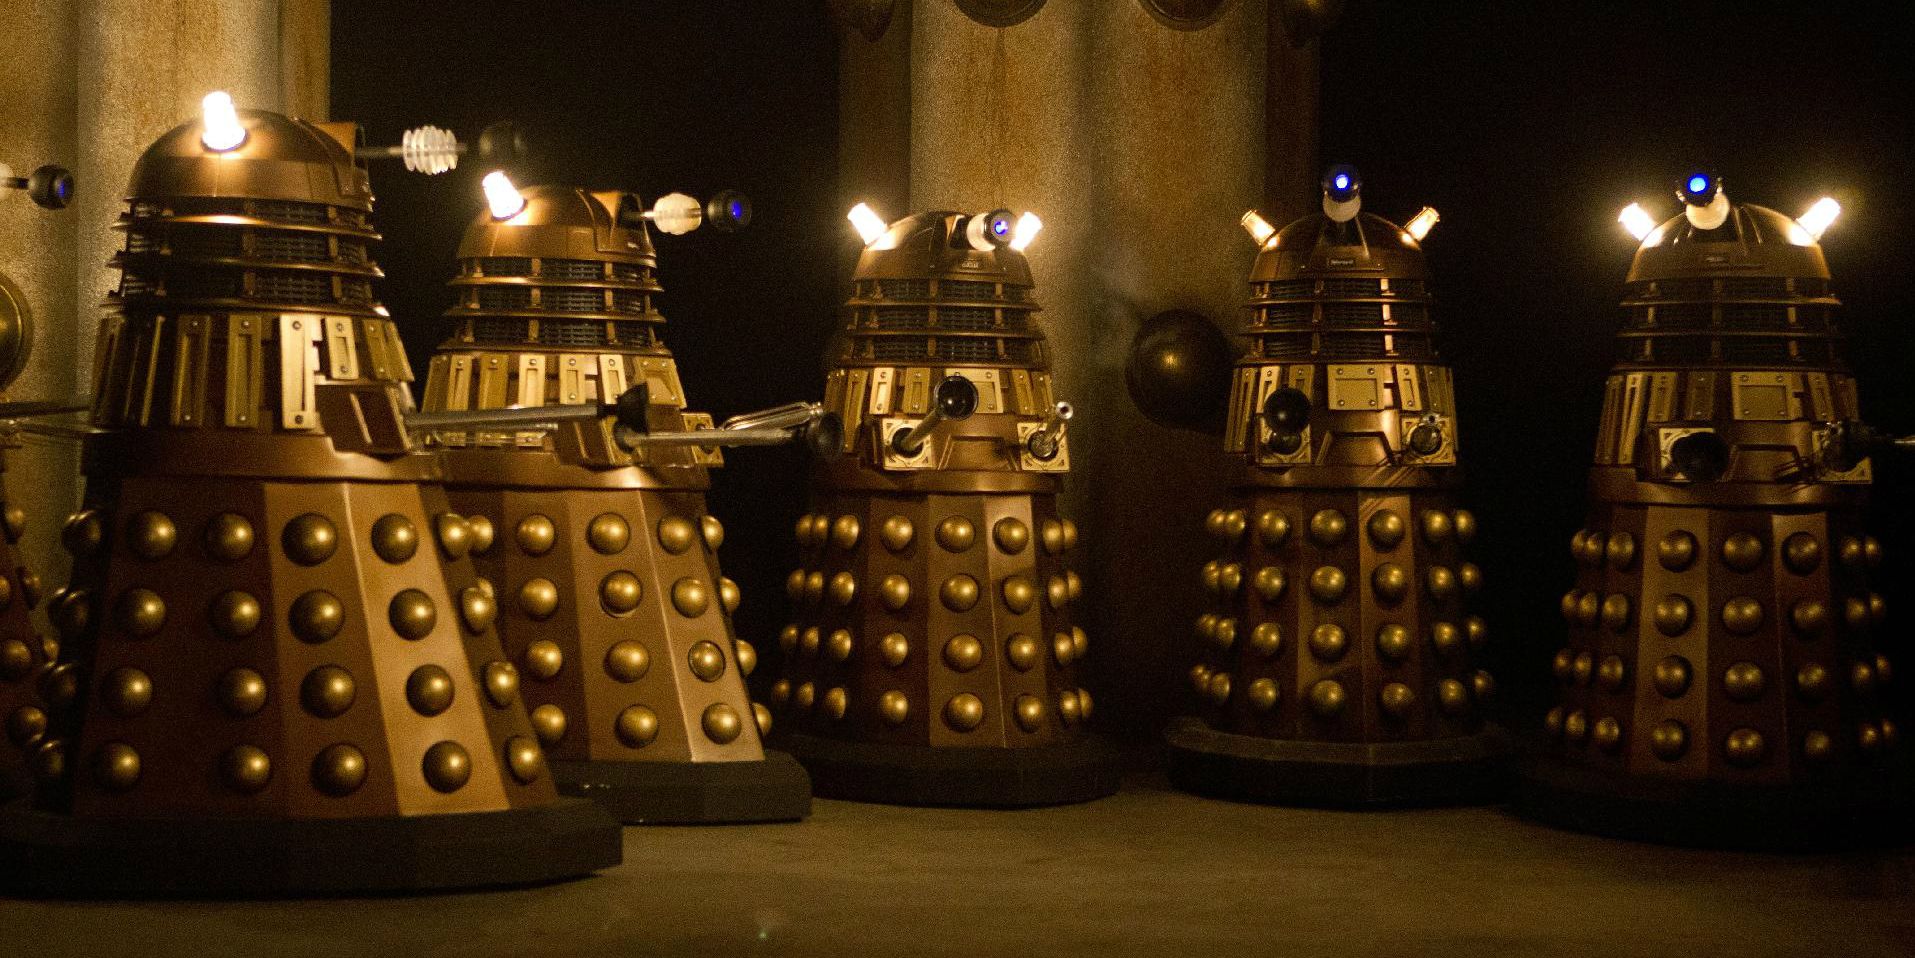 Daleks in Doctor Who